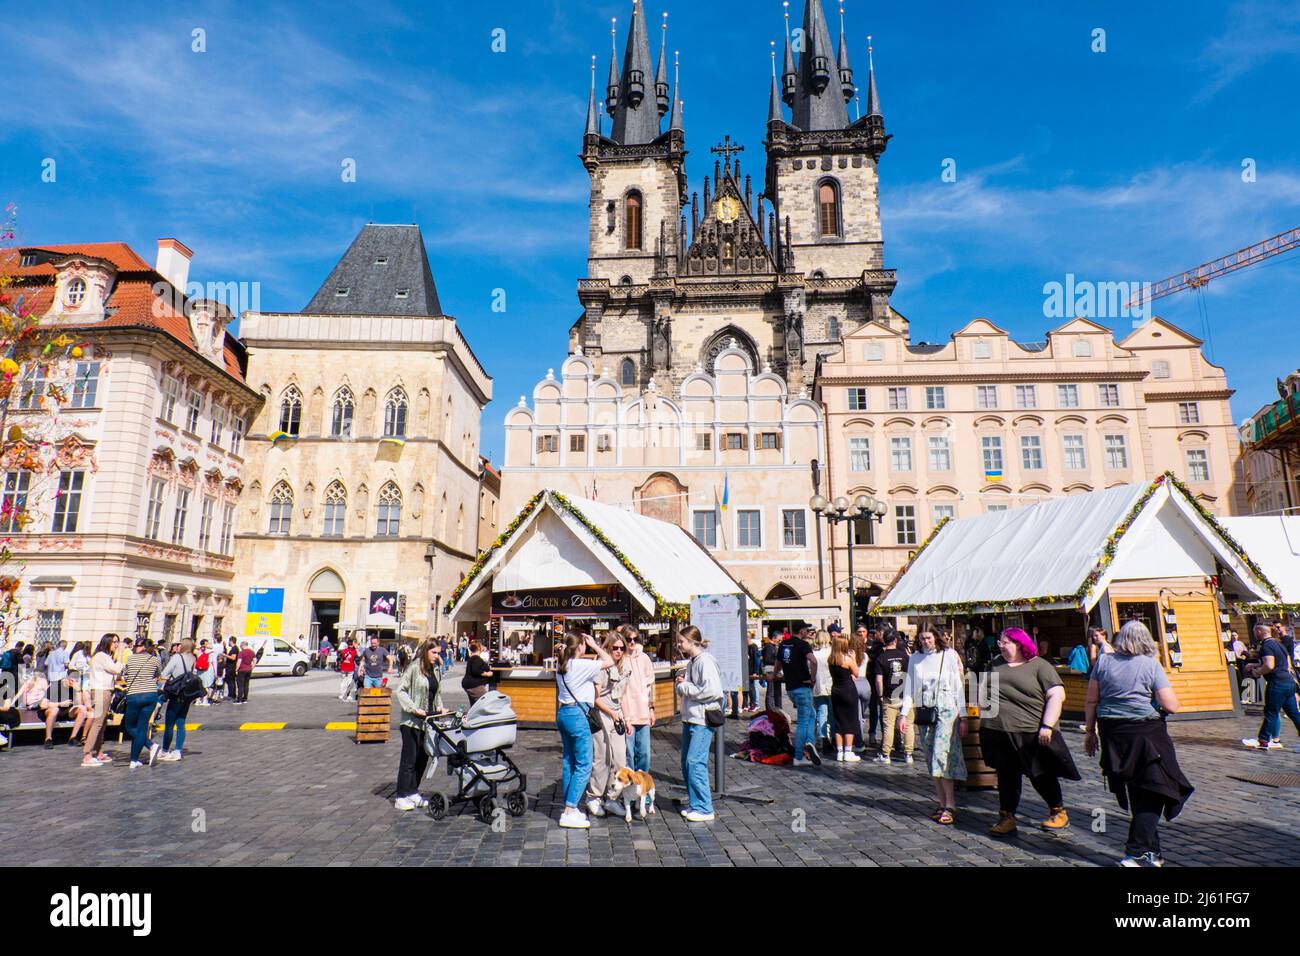 Easter market, Staroměstské náměstí, old town square, Prague, Czech Republic Stock Photo